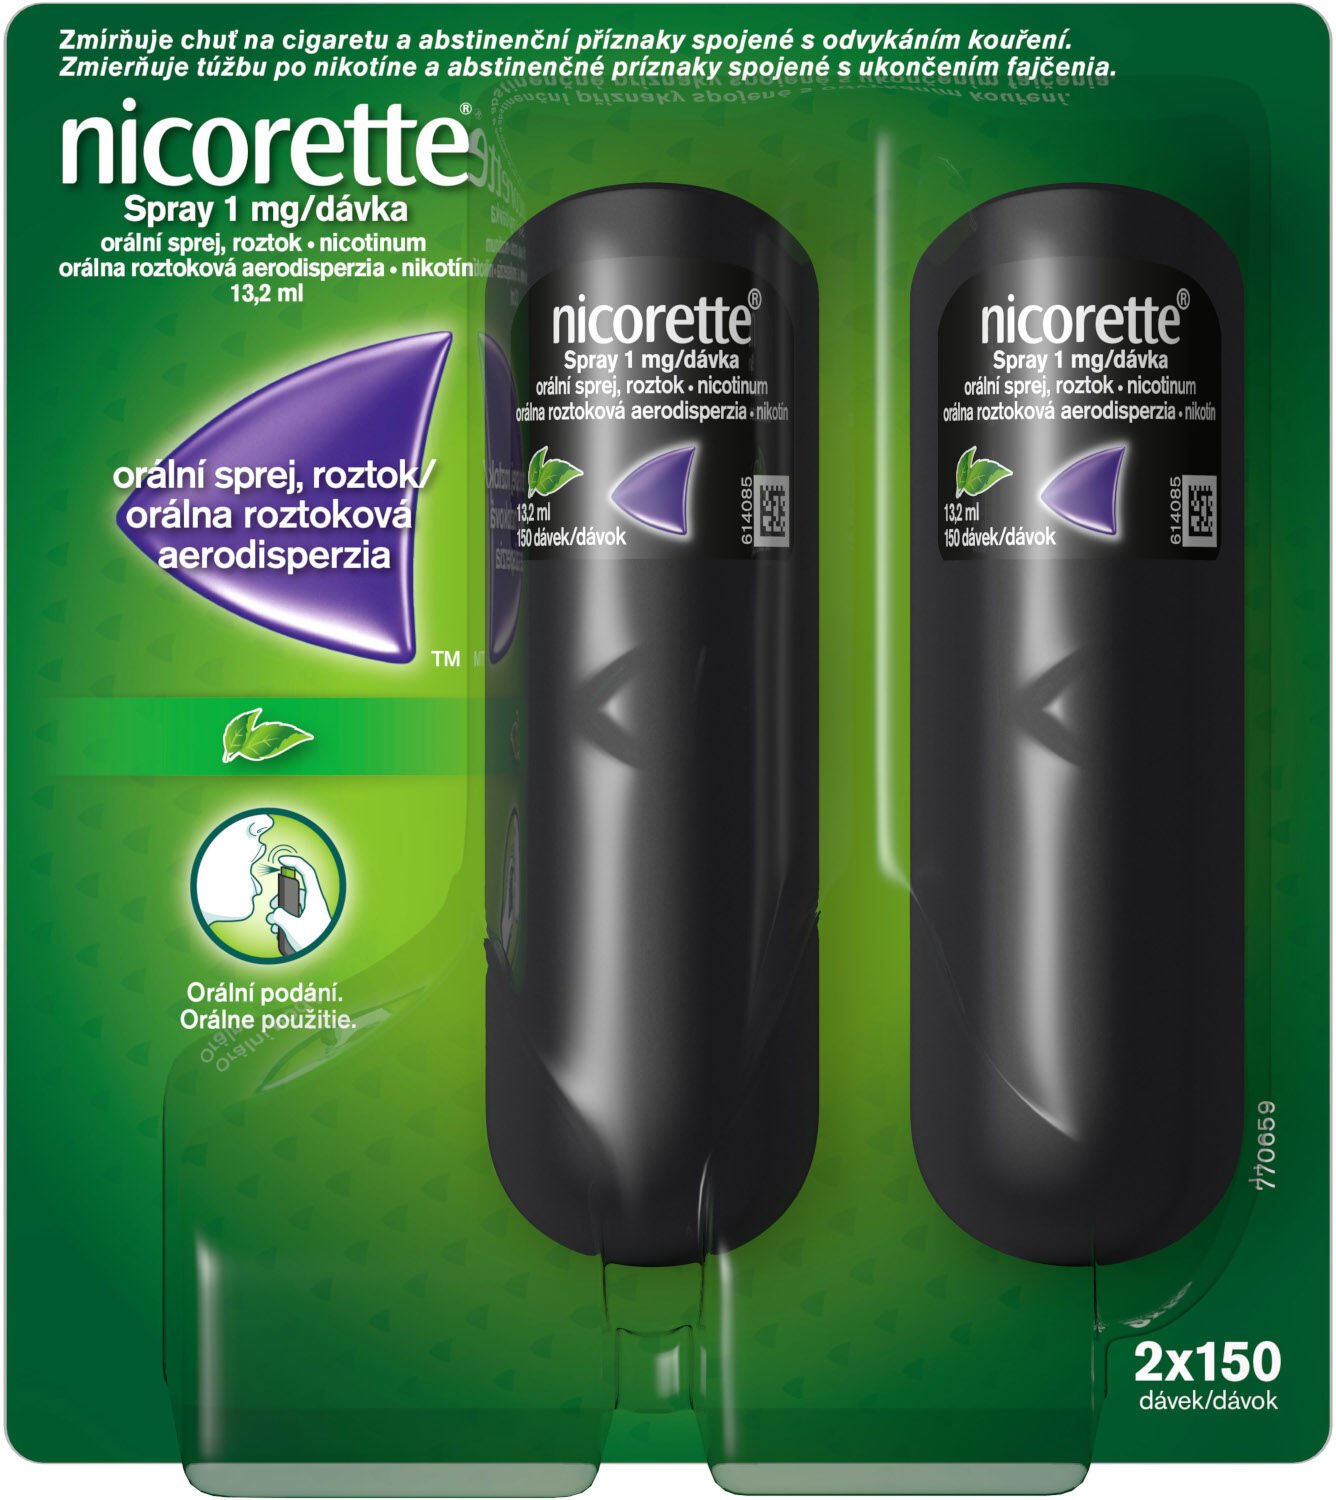 Nicorette ® Spray 1 mg/dávka, orálna roztoková aerodisperzia 2 x 150 ks